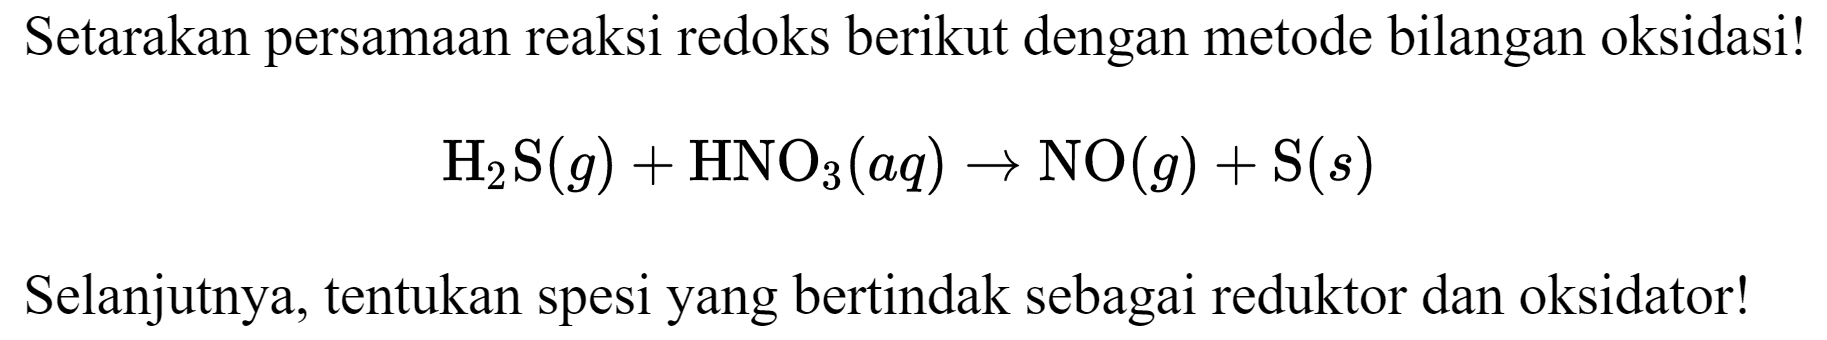 Setarakan persamaan reaksi redoks berikut dengan metode bilangan oksidasi!

H2S (g) + HNO3 (aq) -> NO (g) + S (s)

Selanjutnya, tentukan spesi yang bertindak sebagai reduktor dan oksidator!